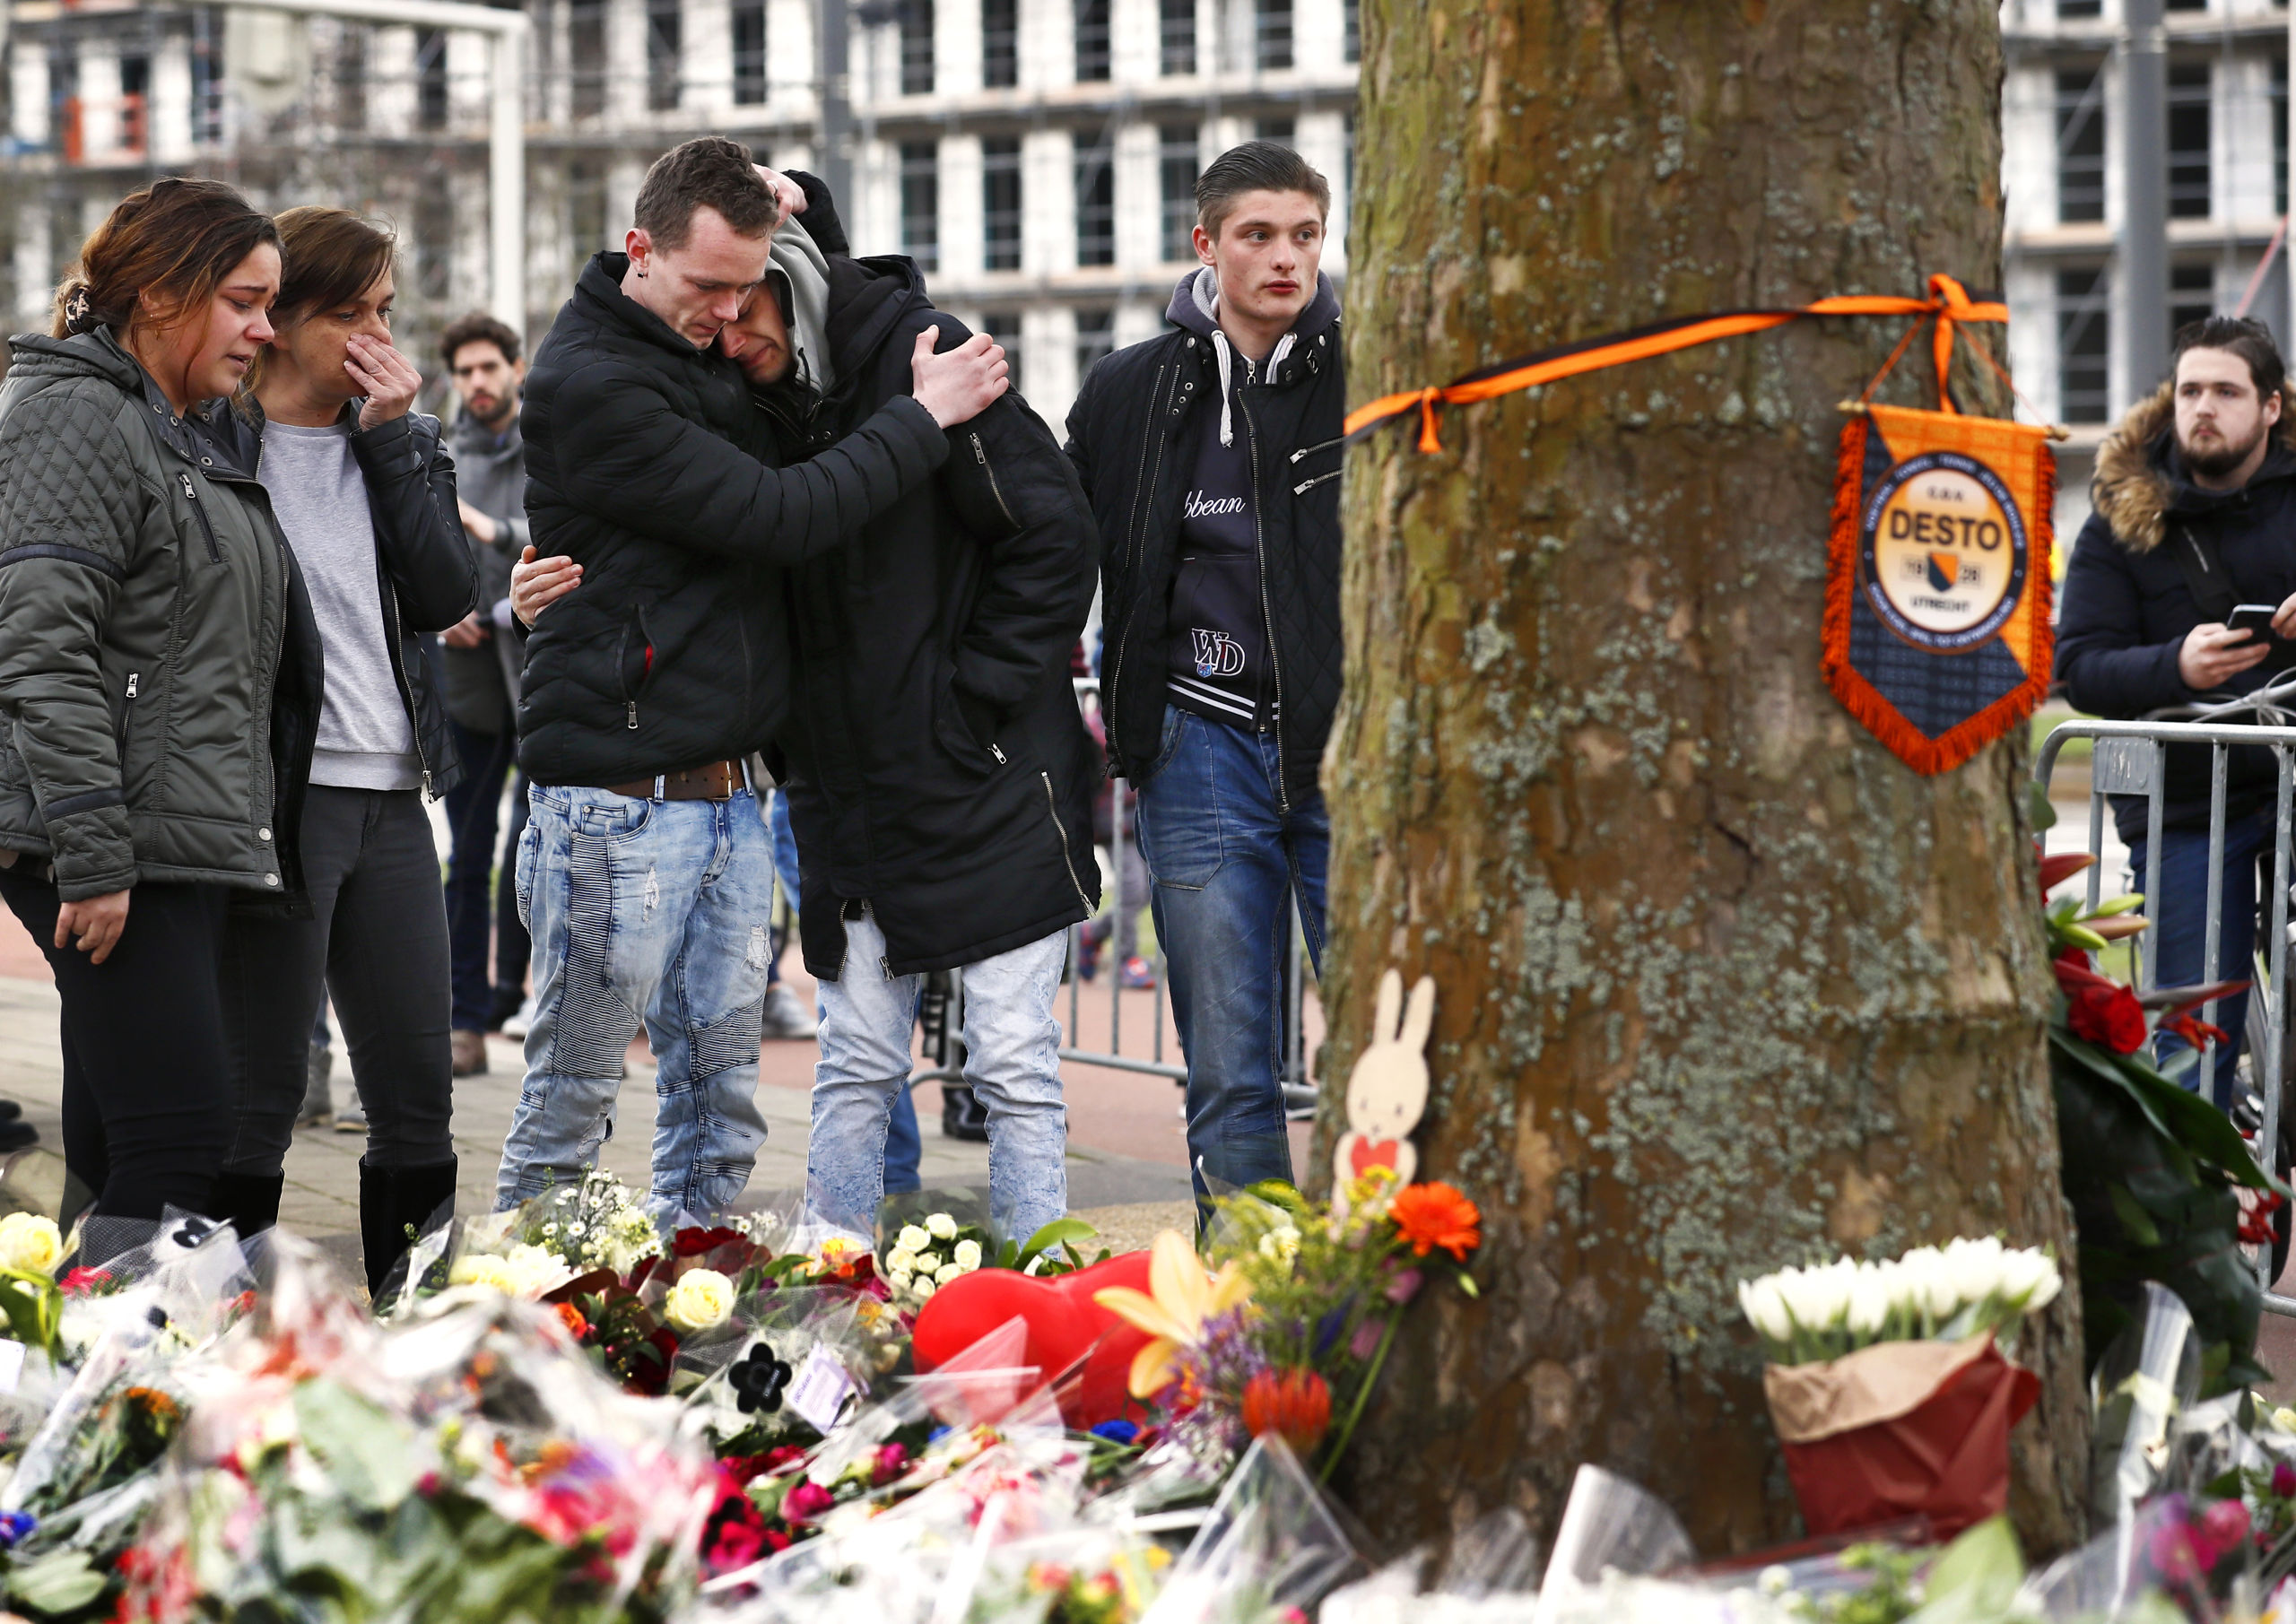 BIj de plek van de aanslag in Utrecht zoeken mensen troost bij elkaar en liggen veel bloemen. 